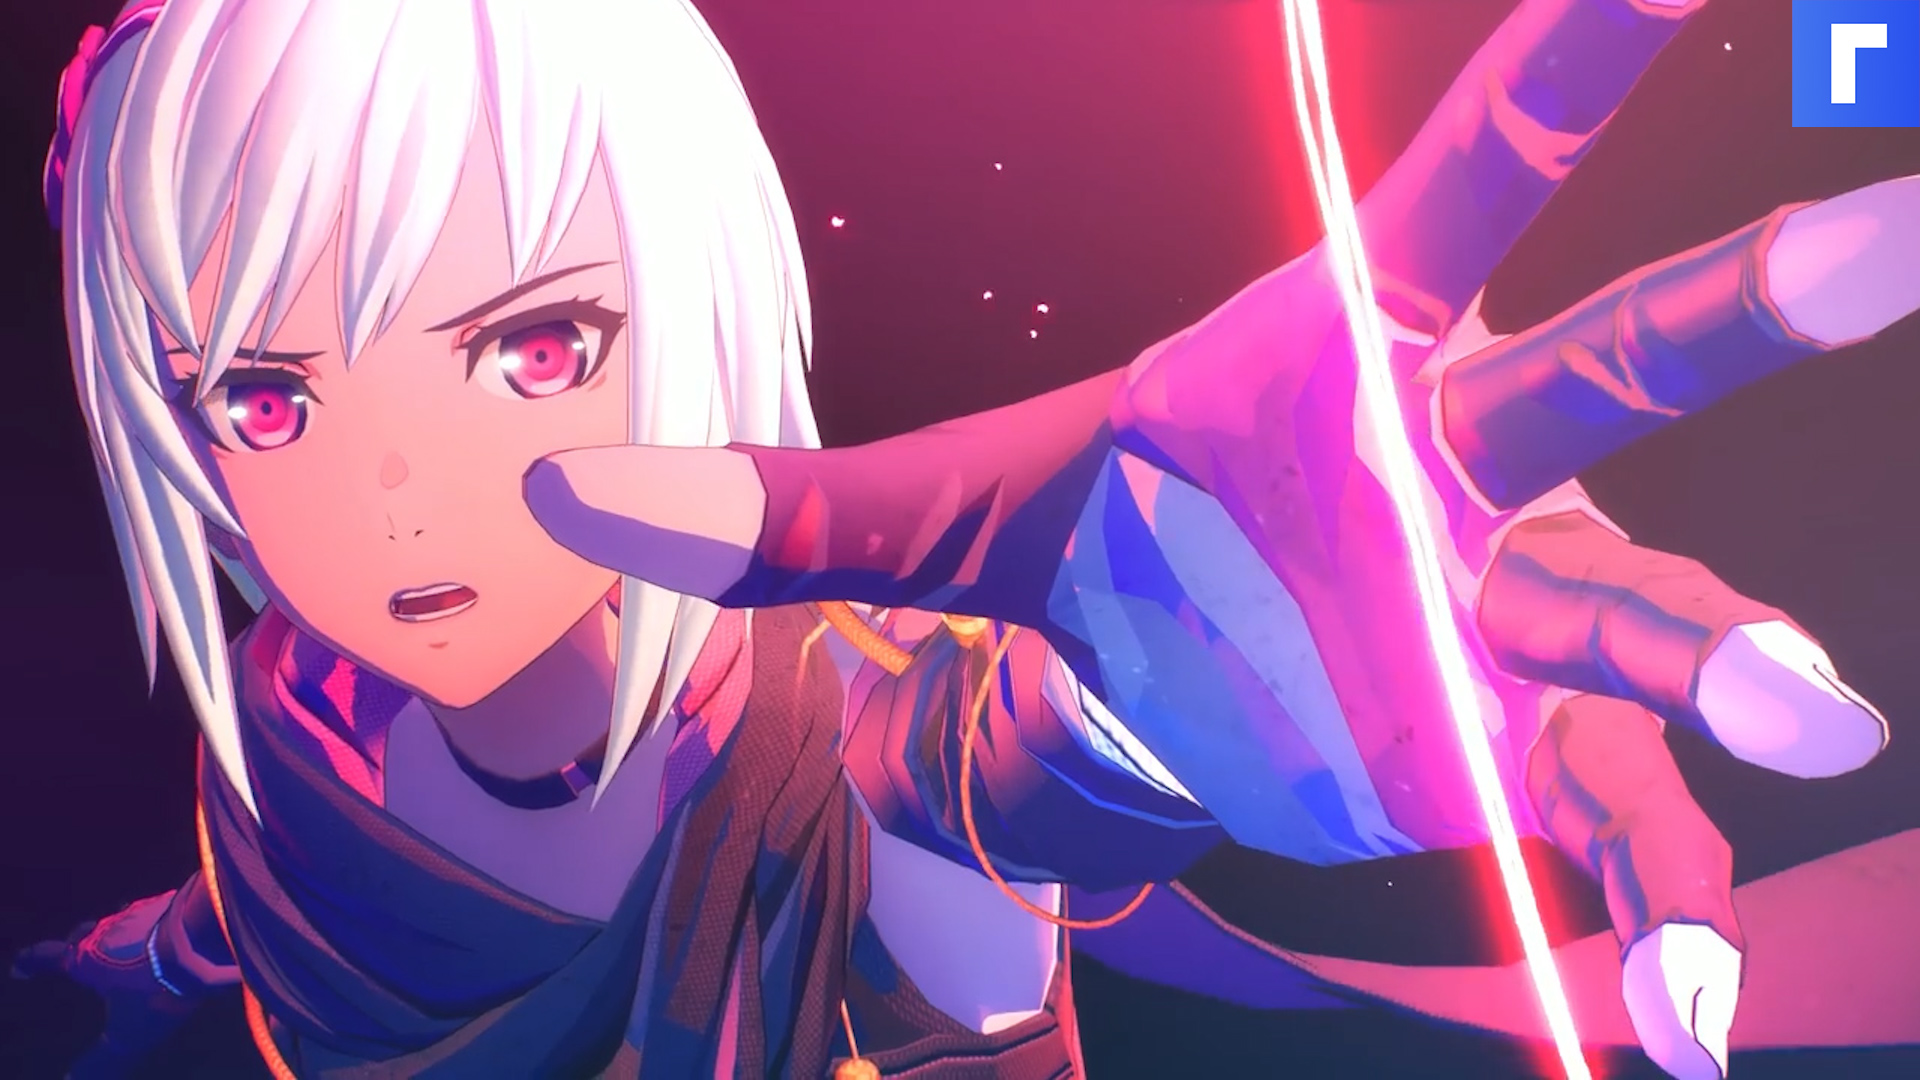 Игра Scarlett Nexus дебютирует 25 июня и получит аниме-сериал от Sunrise.